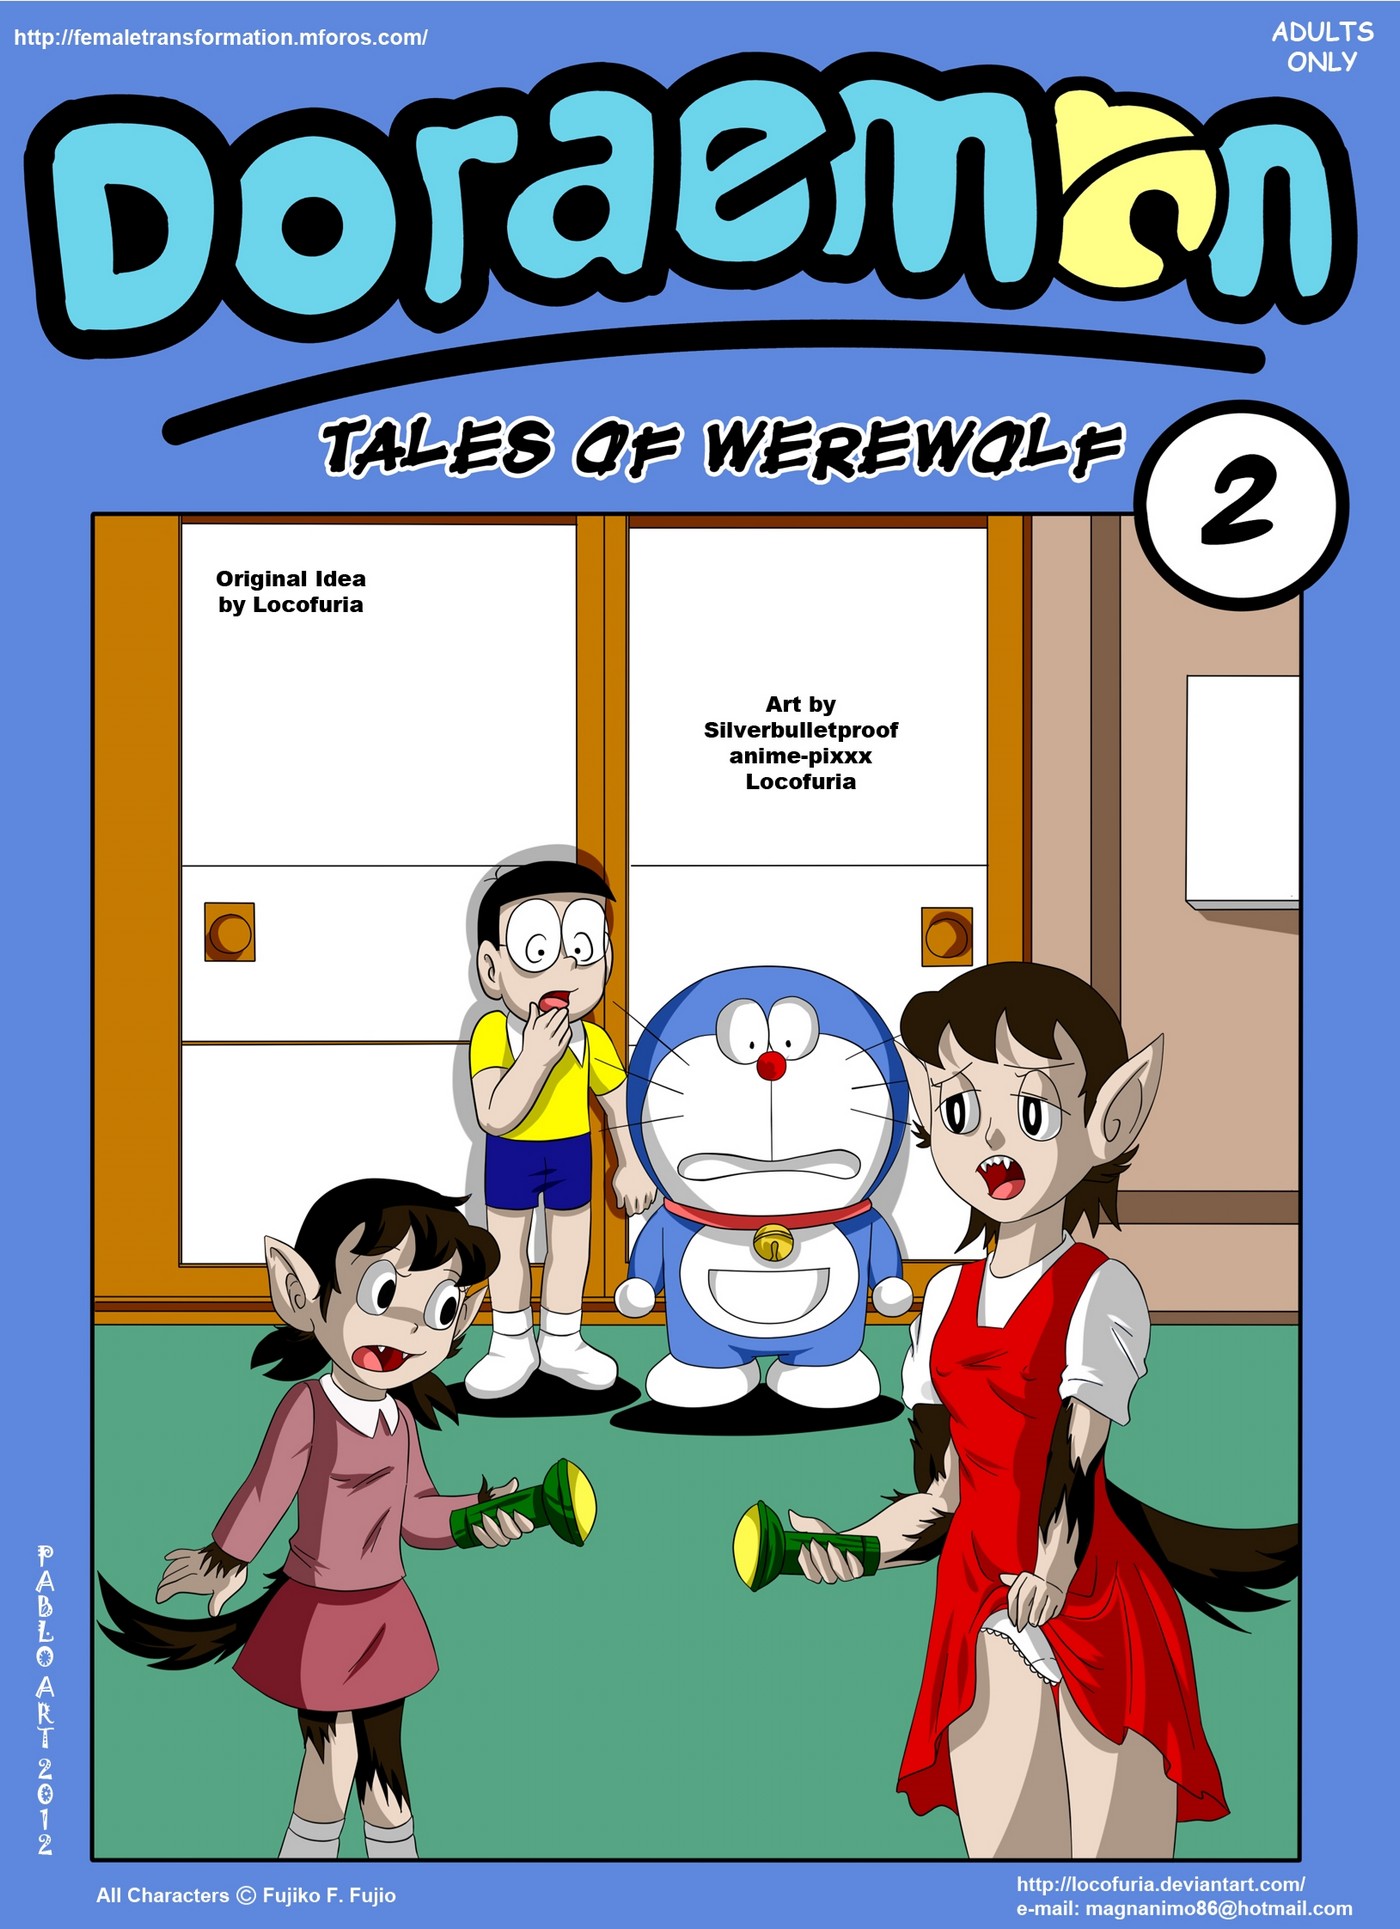 Werewolf Sex Toons - Doraemon Tales of Werewolf 2 - KingComiX.com